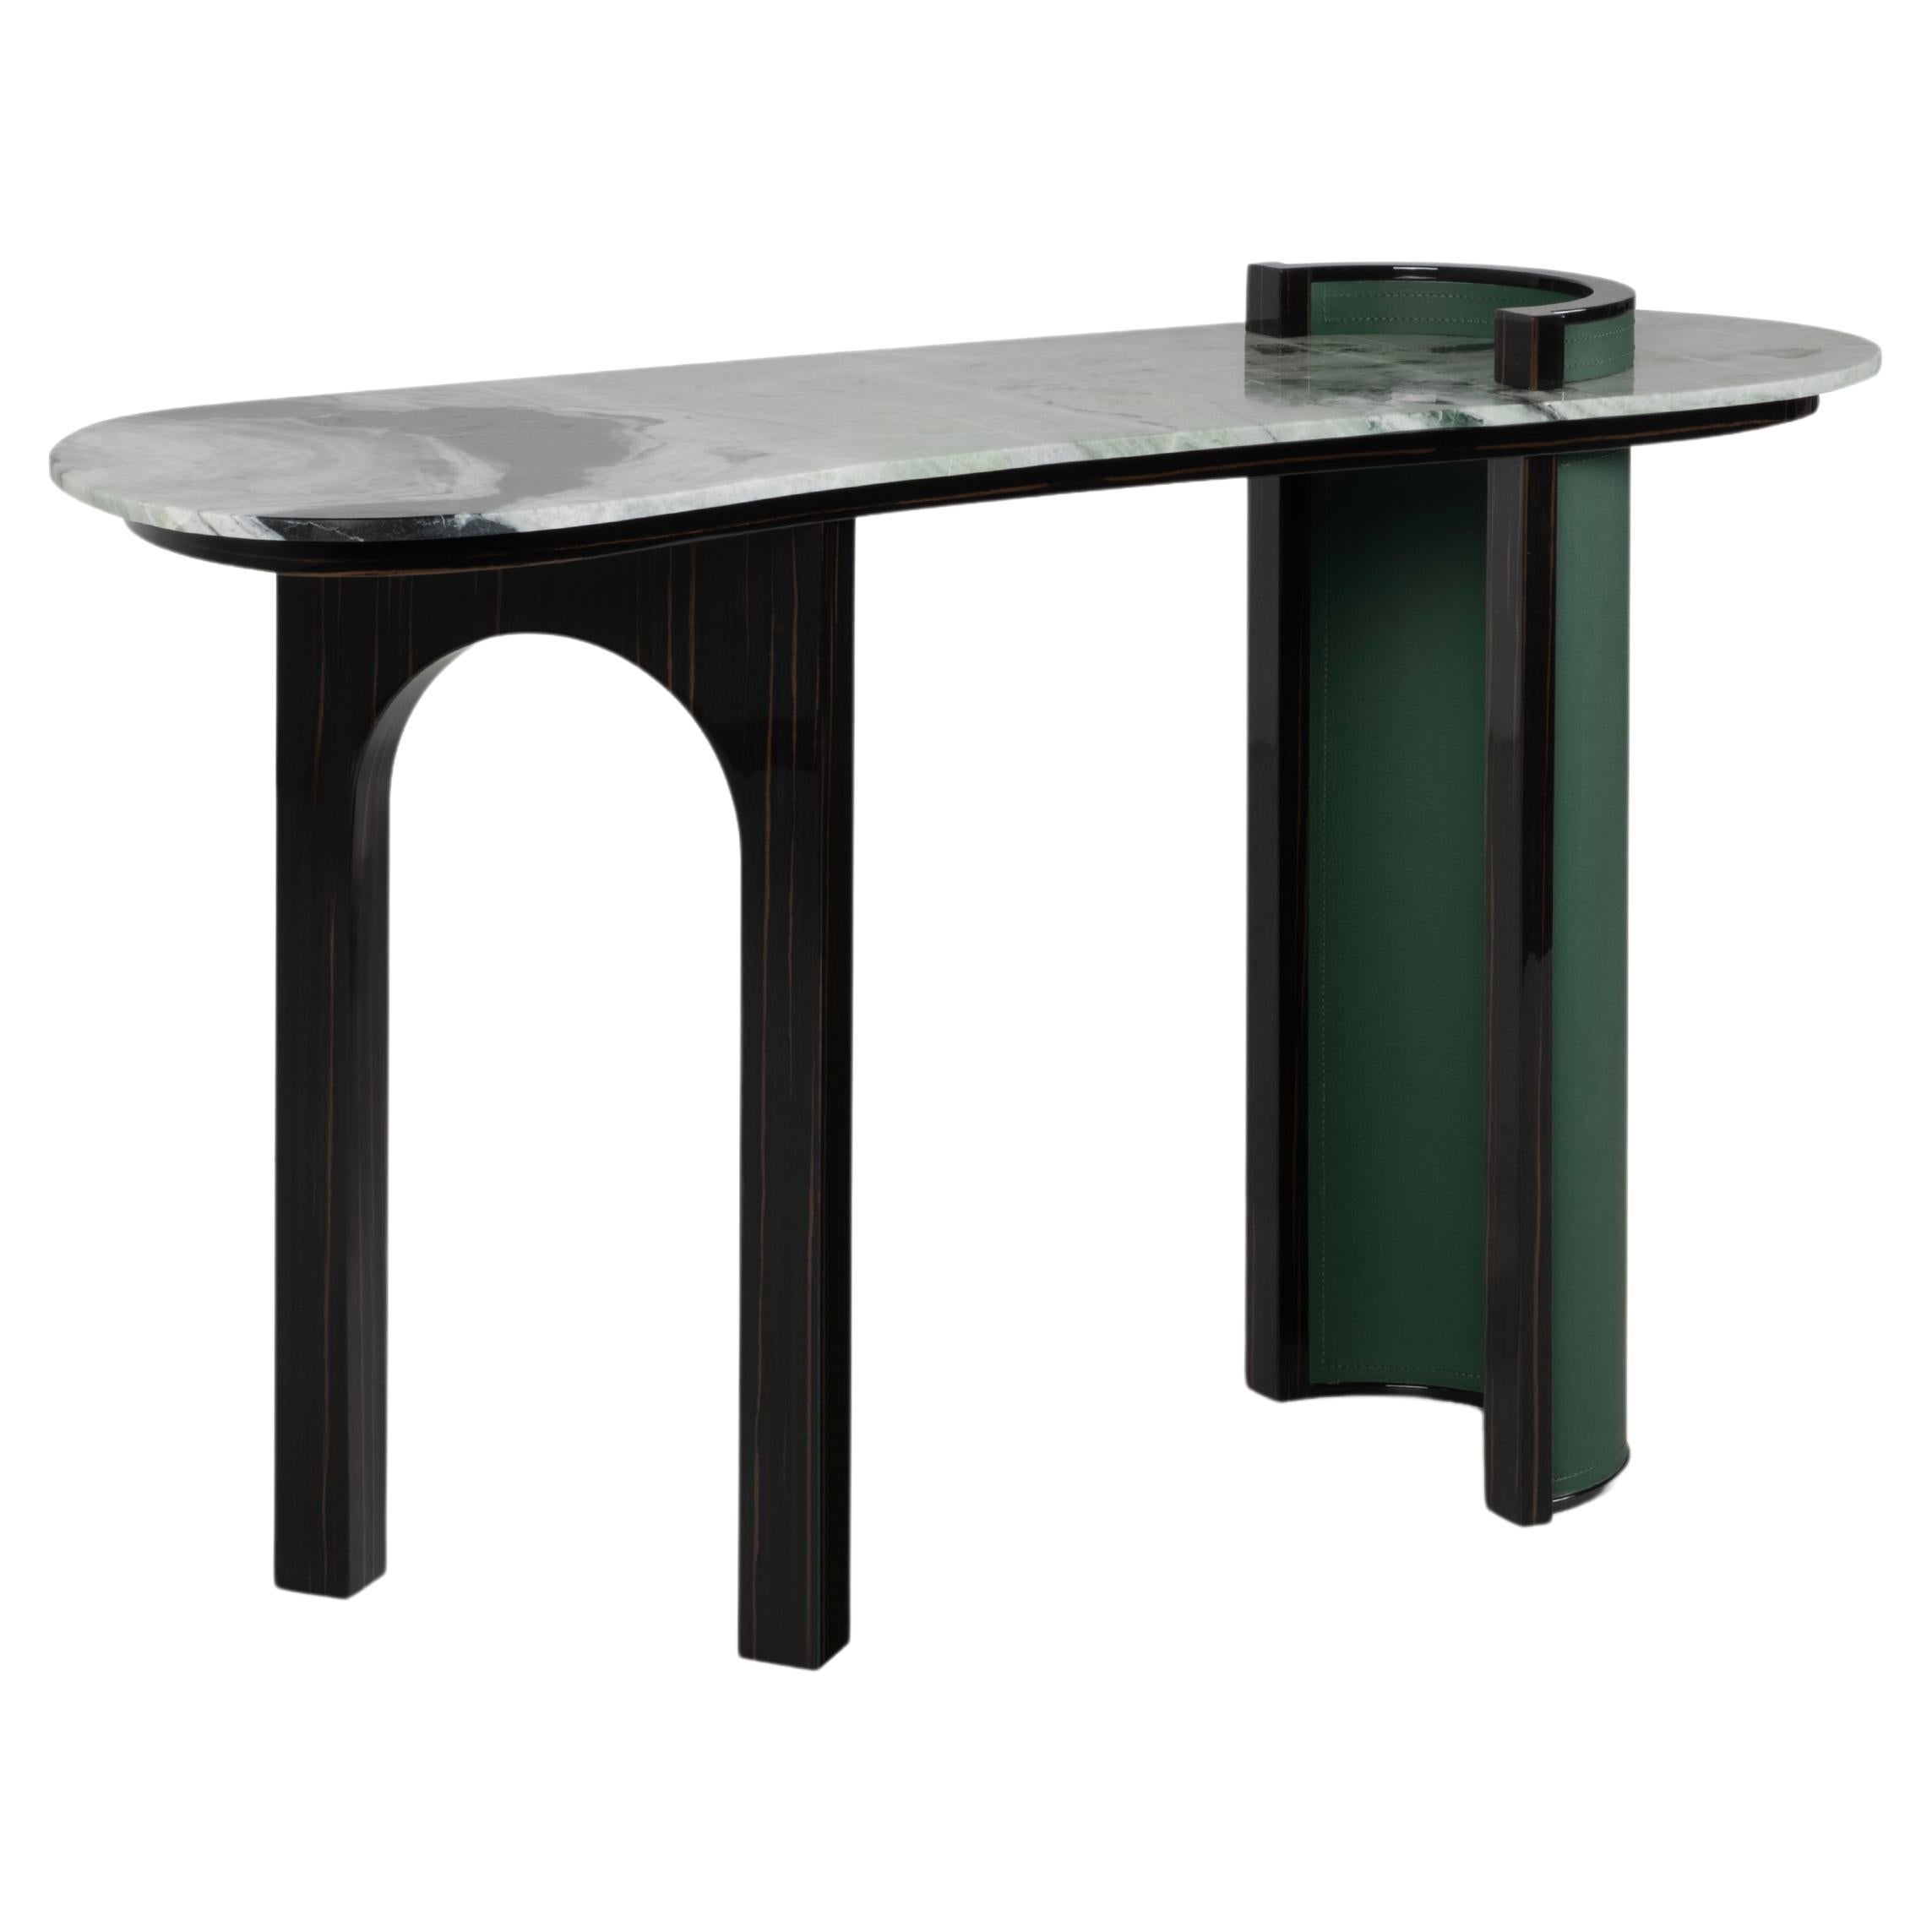 Table console moderne Chiado, cuir marbré, fabriquée à la main au Portugal par Greenapple